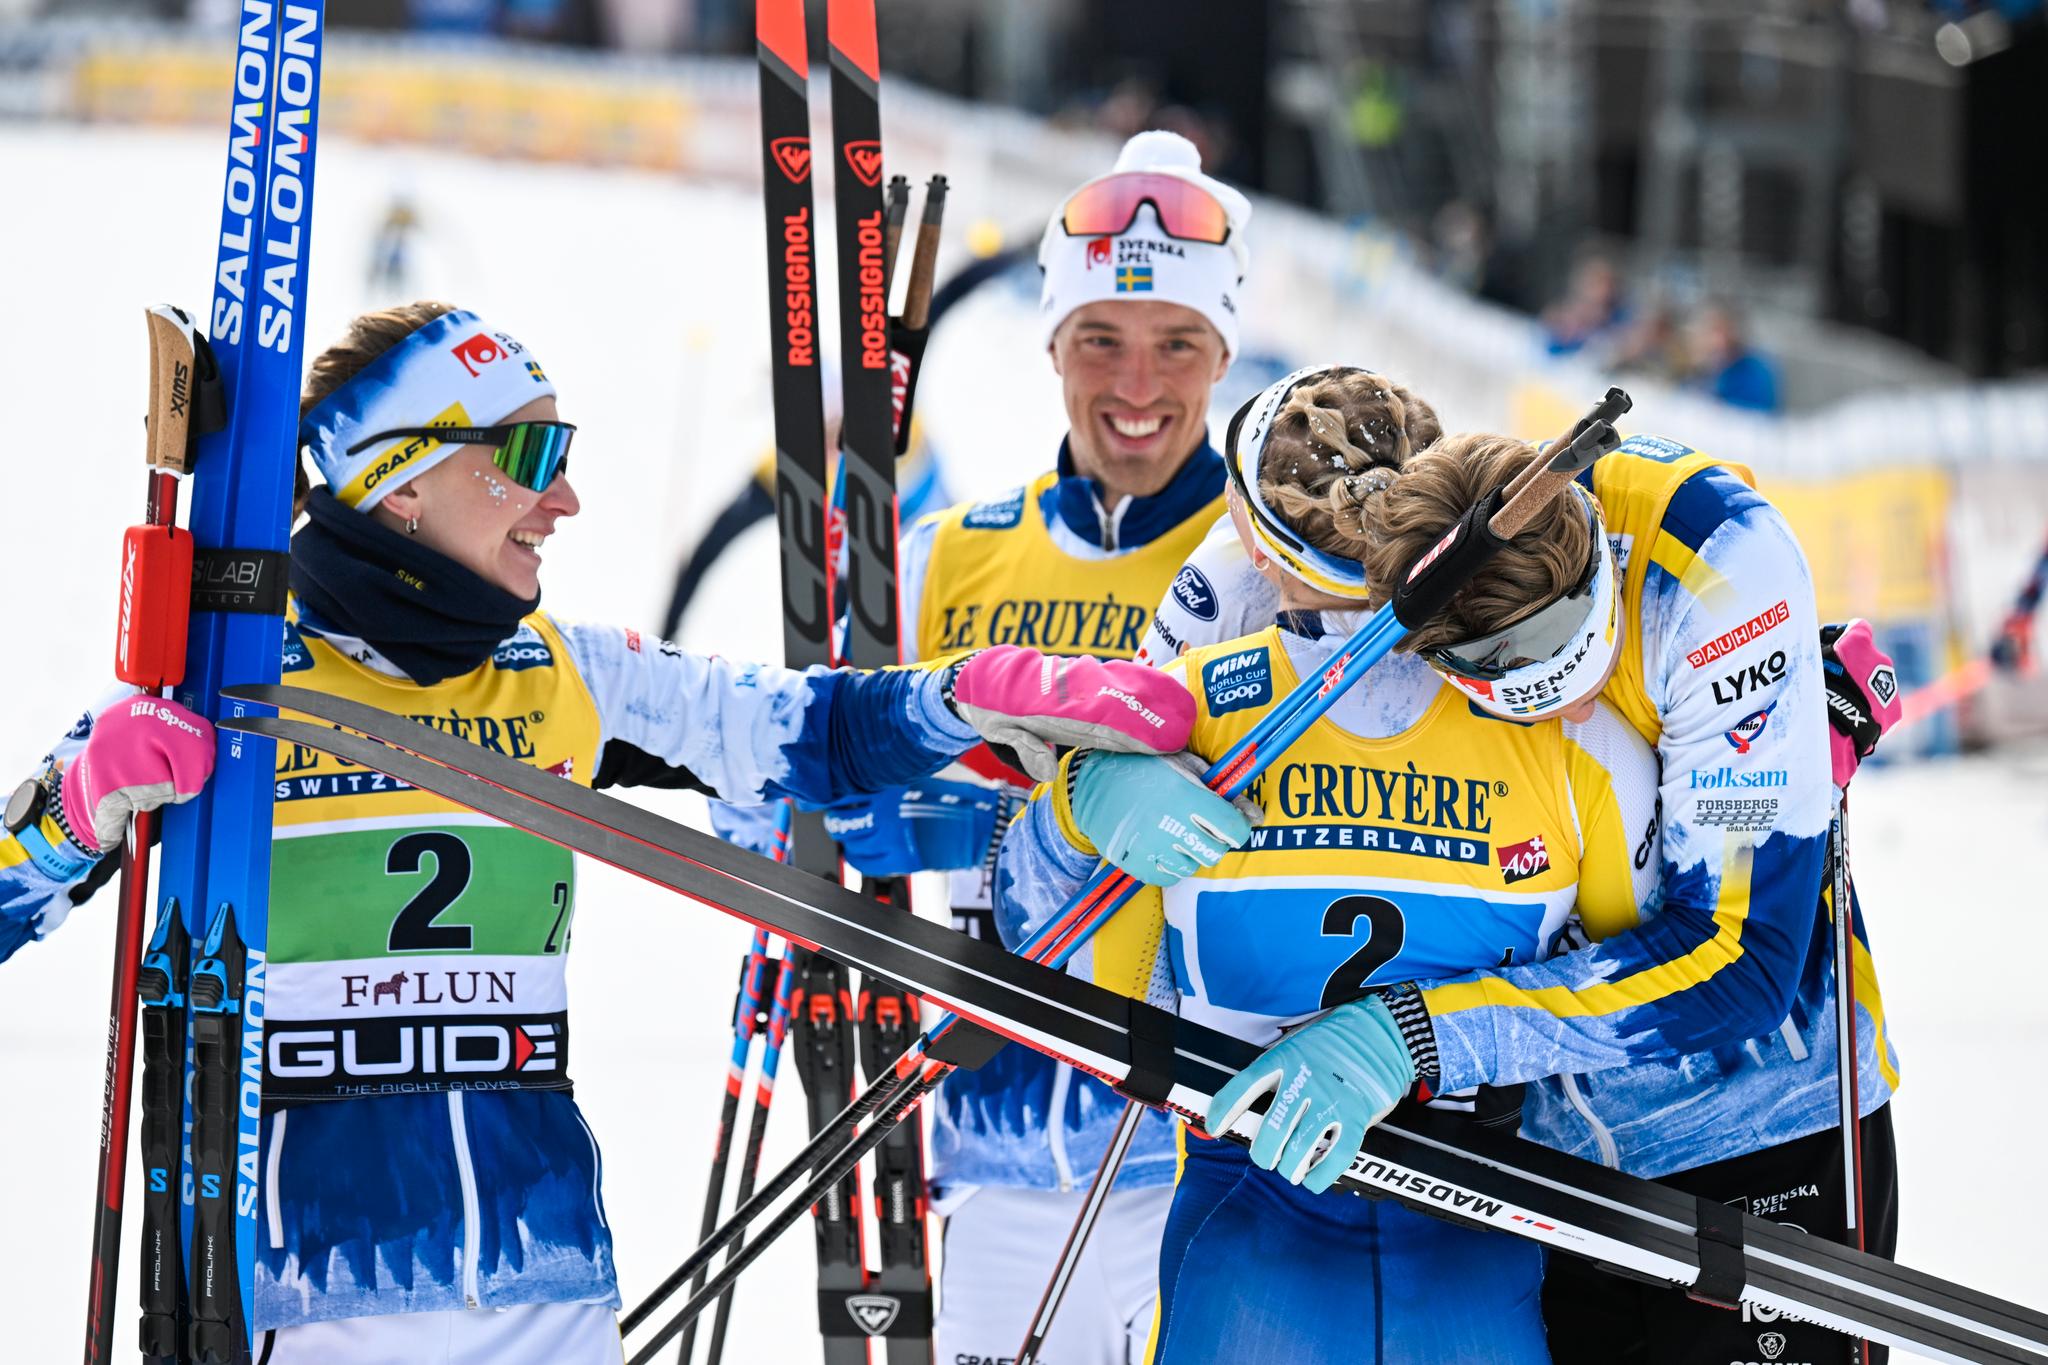 ANMELDTE: Moa Ilar (venstre) har mottatt mye kritikk for en manøver tidligere denne sesongen. Her er hun del av det svenske vinnerlaget under en verdenscupstafett i Falun på tampen av sesongen i år.